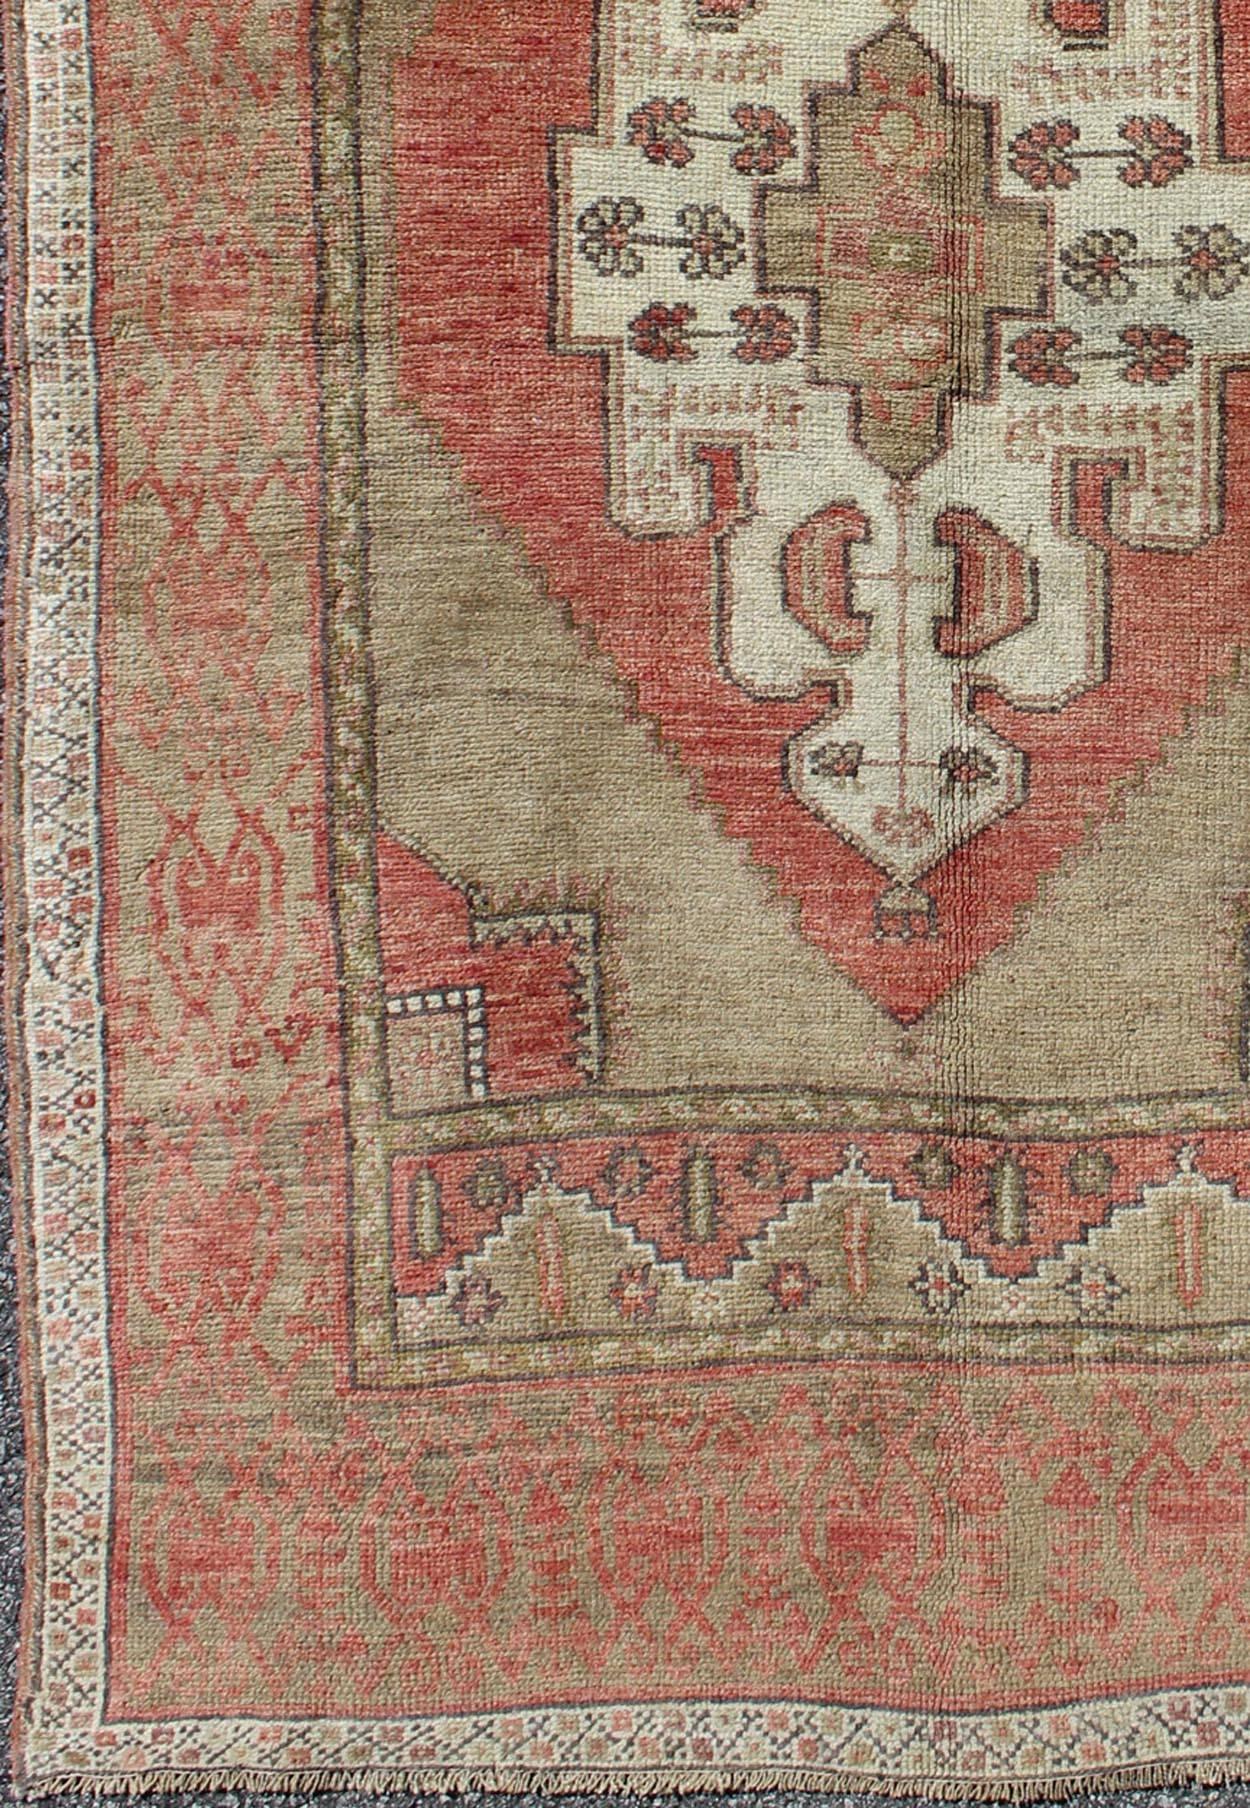 Olivgrüner und roter türkischer Oushak-Teppich mit Stammesmedaillon-Muster, Teppich de-141924, Herkunftsland / Art: Türkei / Oushak, um 1940

Dieser alte türkische Oushak-Teppich zeichnet sich durch ein kompliziertes, wunderschönes Design mit